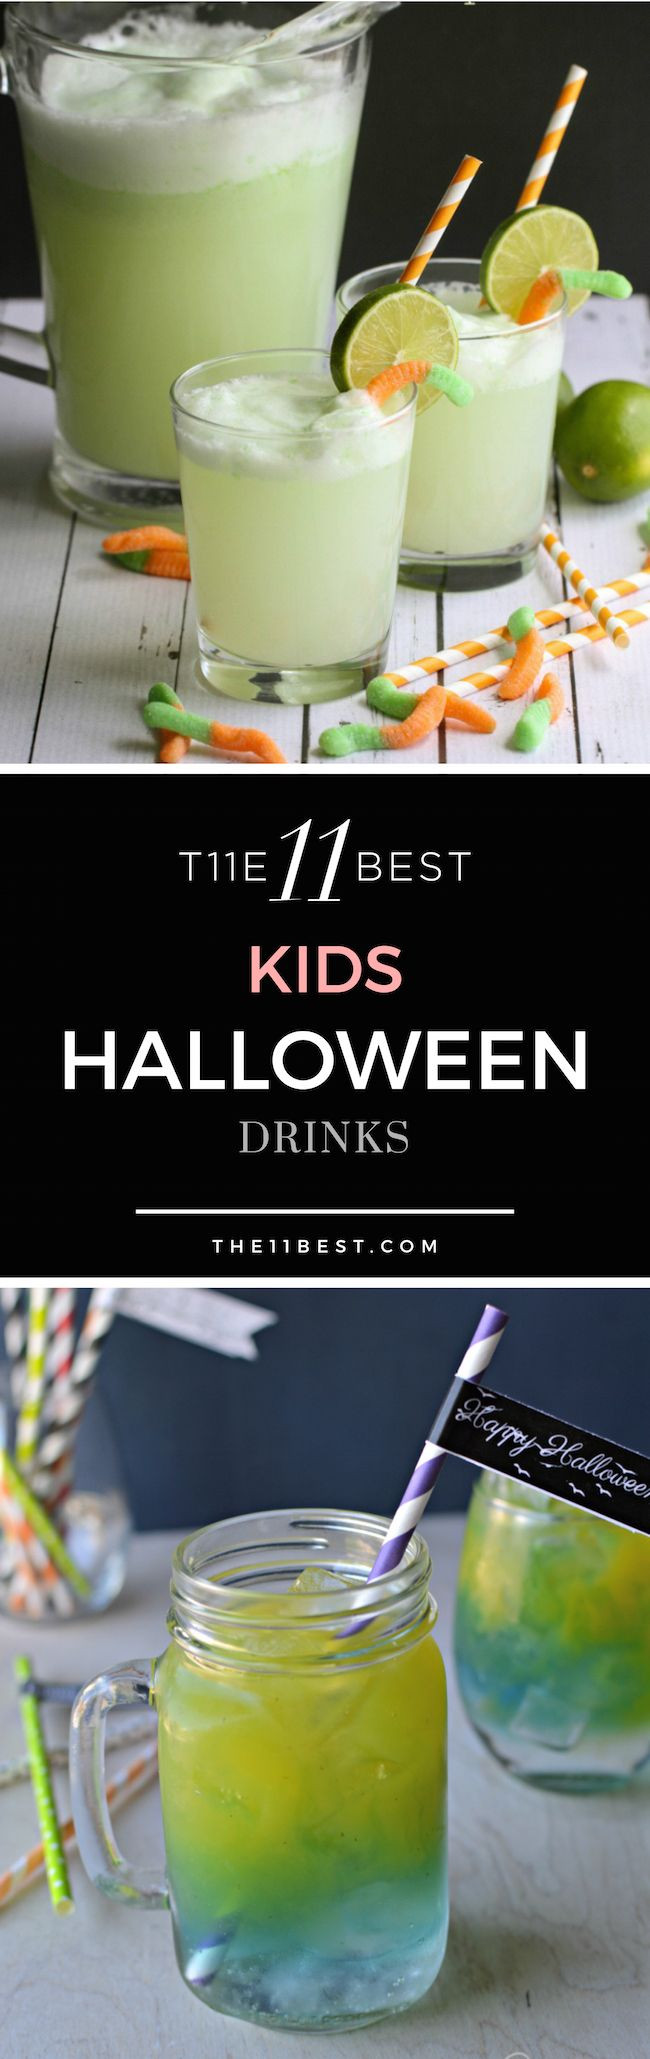 Halloween Drinks Pinterest
 1000 ideas about Halloween Drinks on Pinterest